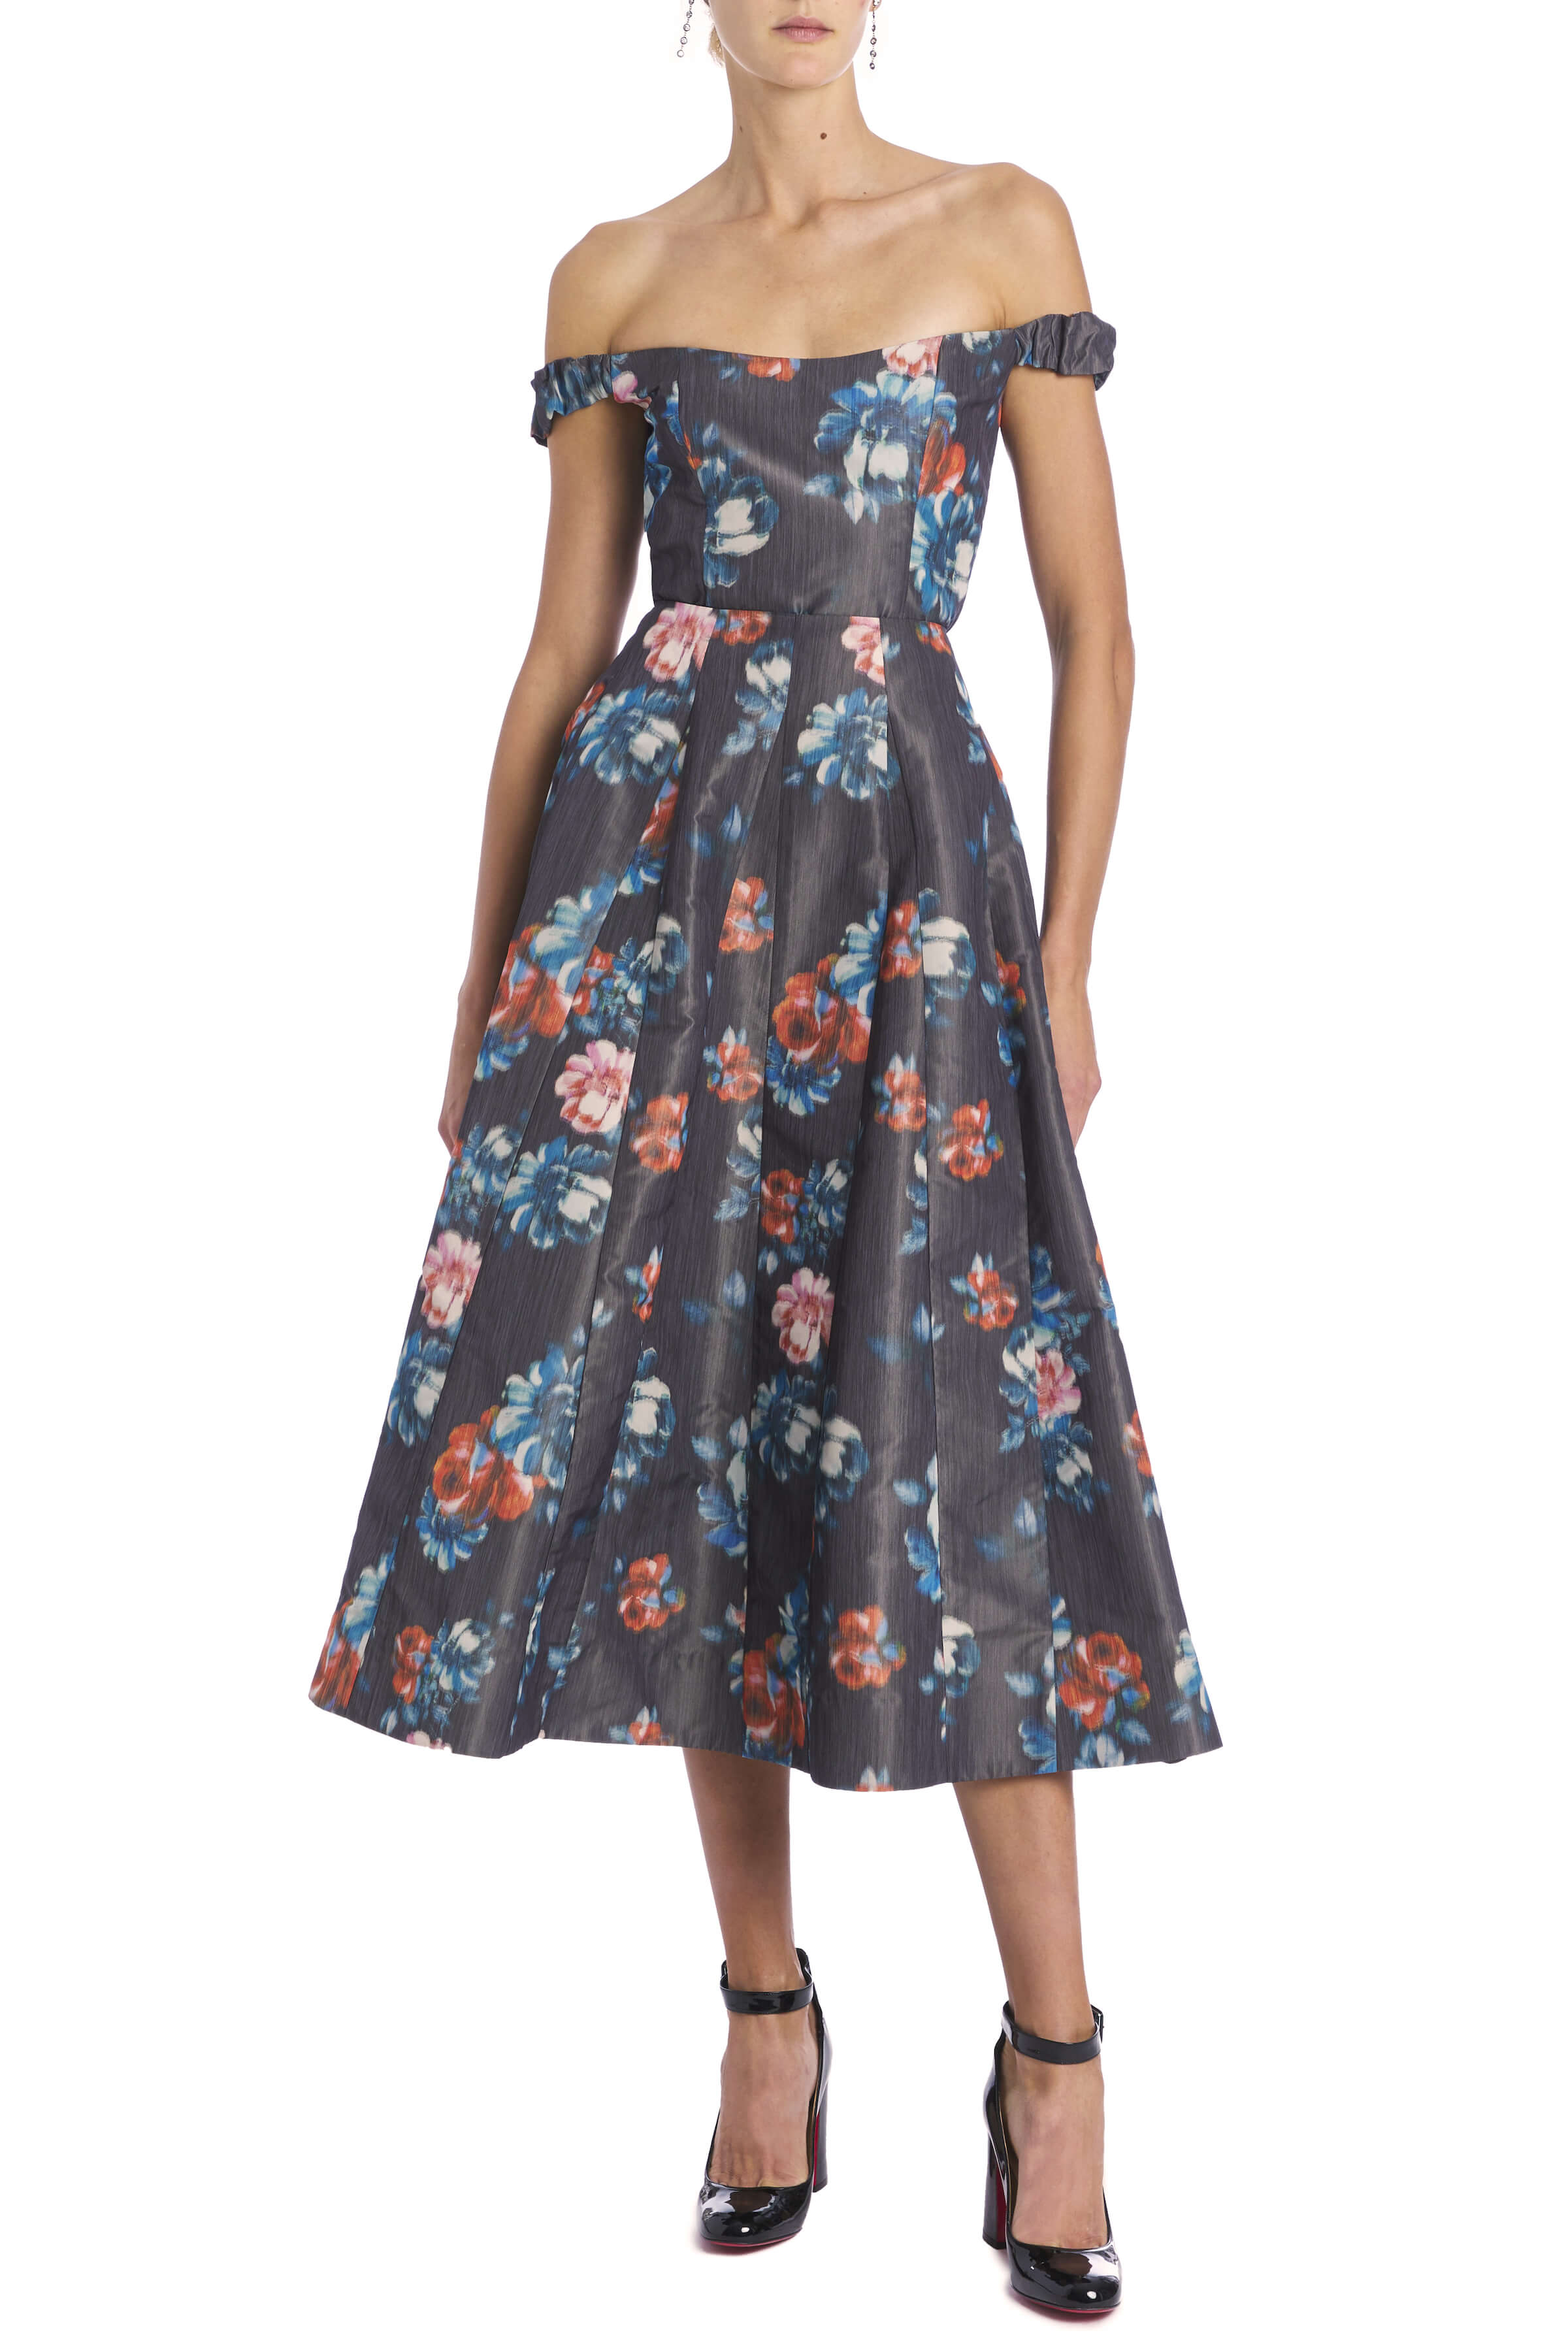 Marjorie Dark Floral Ikat Full Skirt With Godet Panels